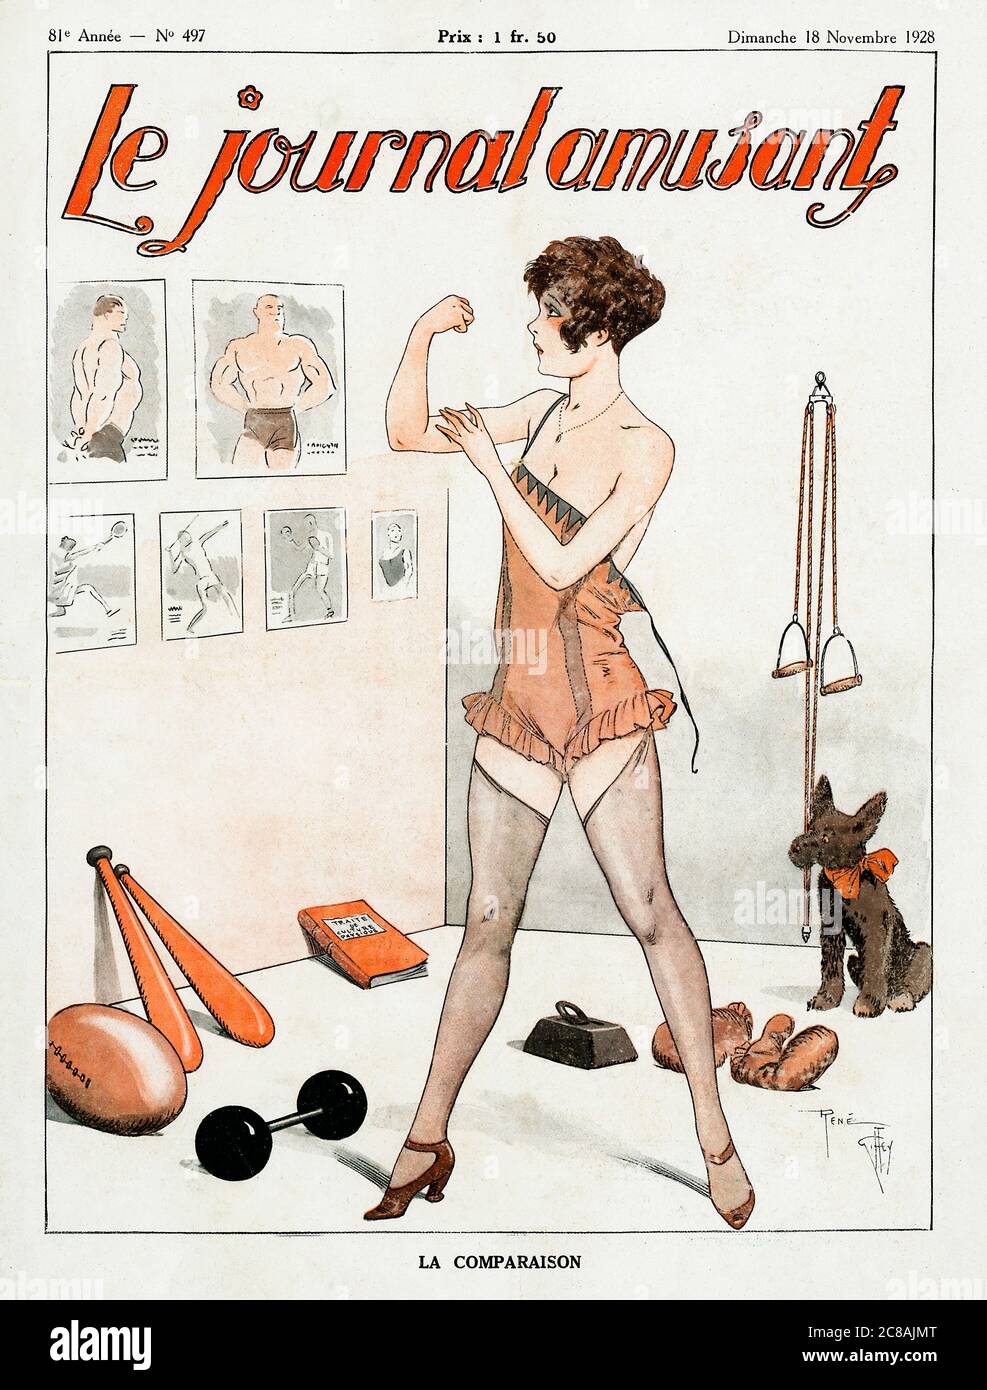 The Comparison, 1928 illustrierte französische Comic-Titelseite mit einer Dame in ihrer Heimsporthalle, die ihre Bizepmuskeln mit den bulligen Bodybuildern mit ihren Bildern an der Wand in La Comparaison vergleicht Stockfoto